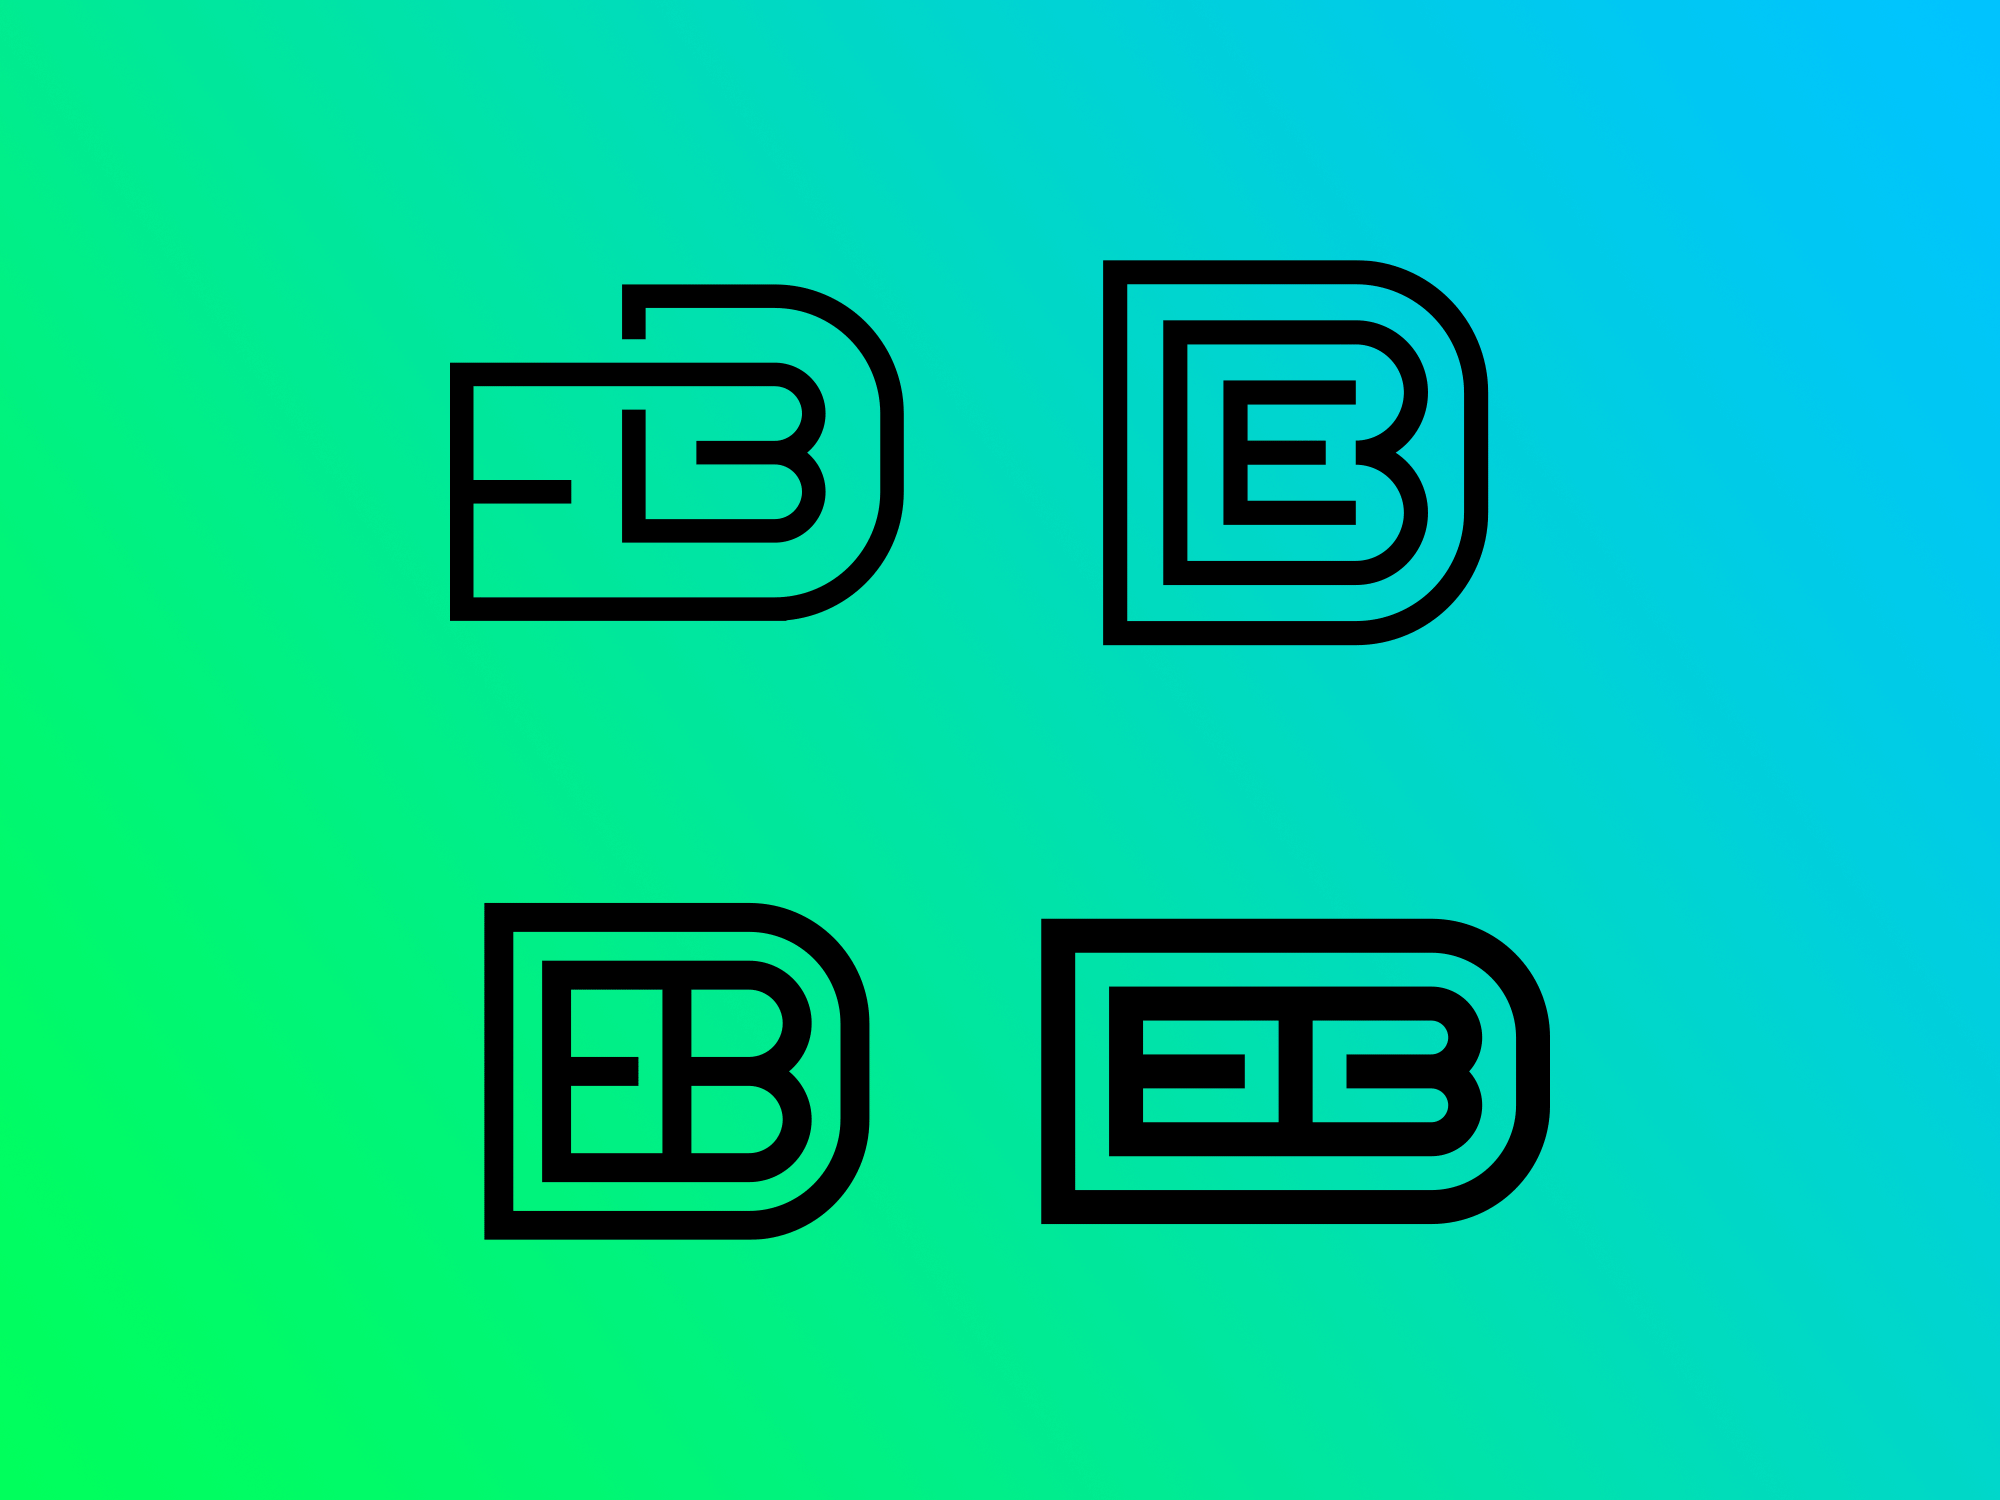 EBD brand branding identity letterform lettering lettermark logo logotype minimal startup logo tech logo typography wordmark